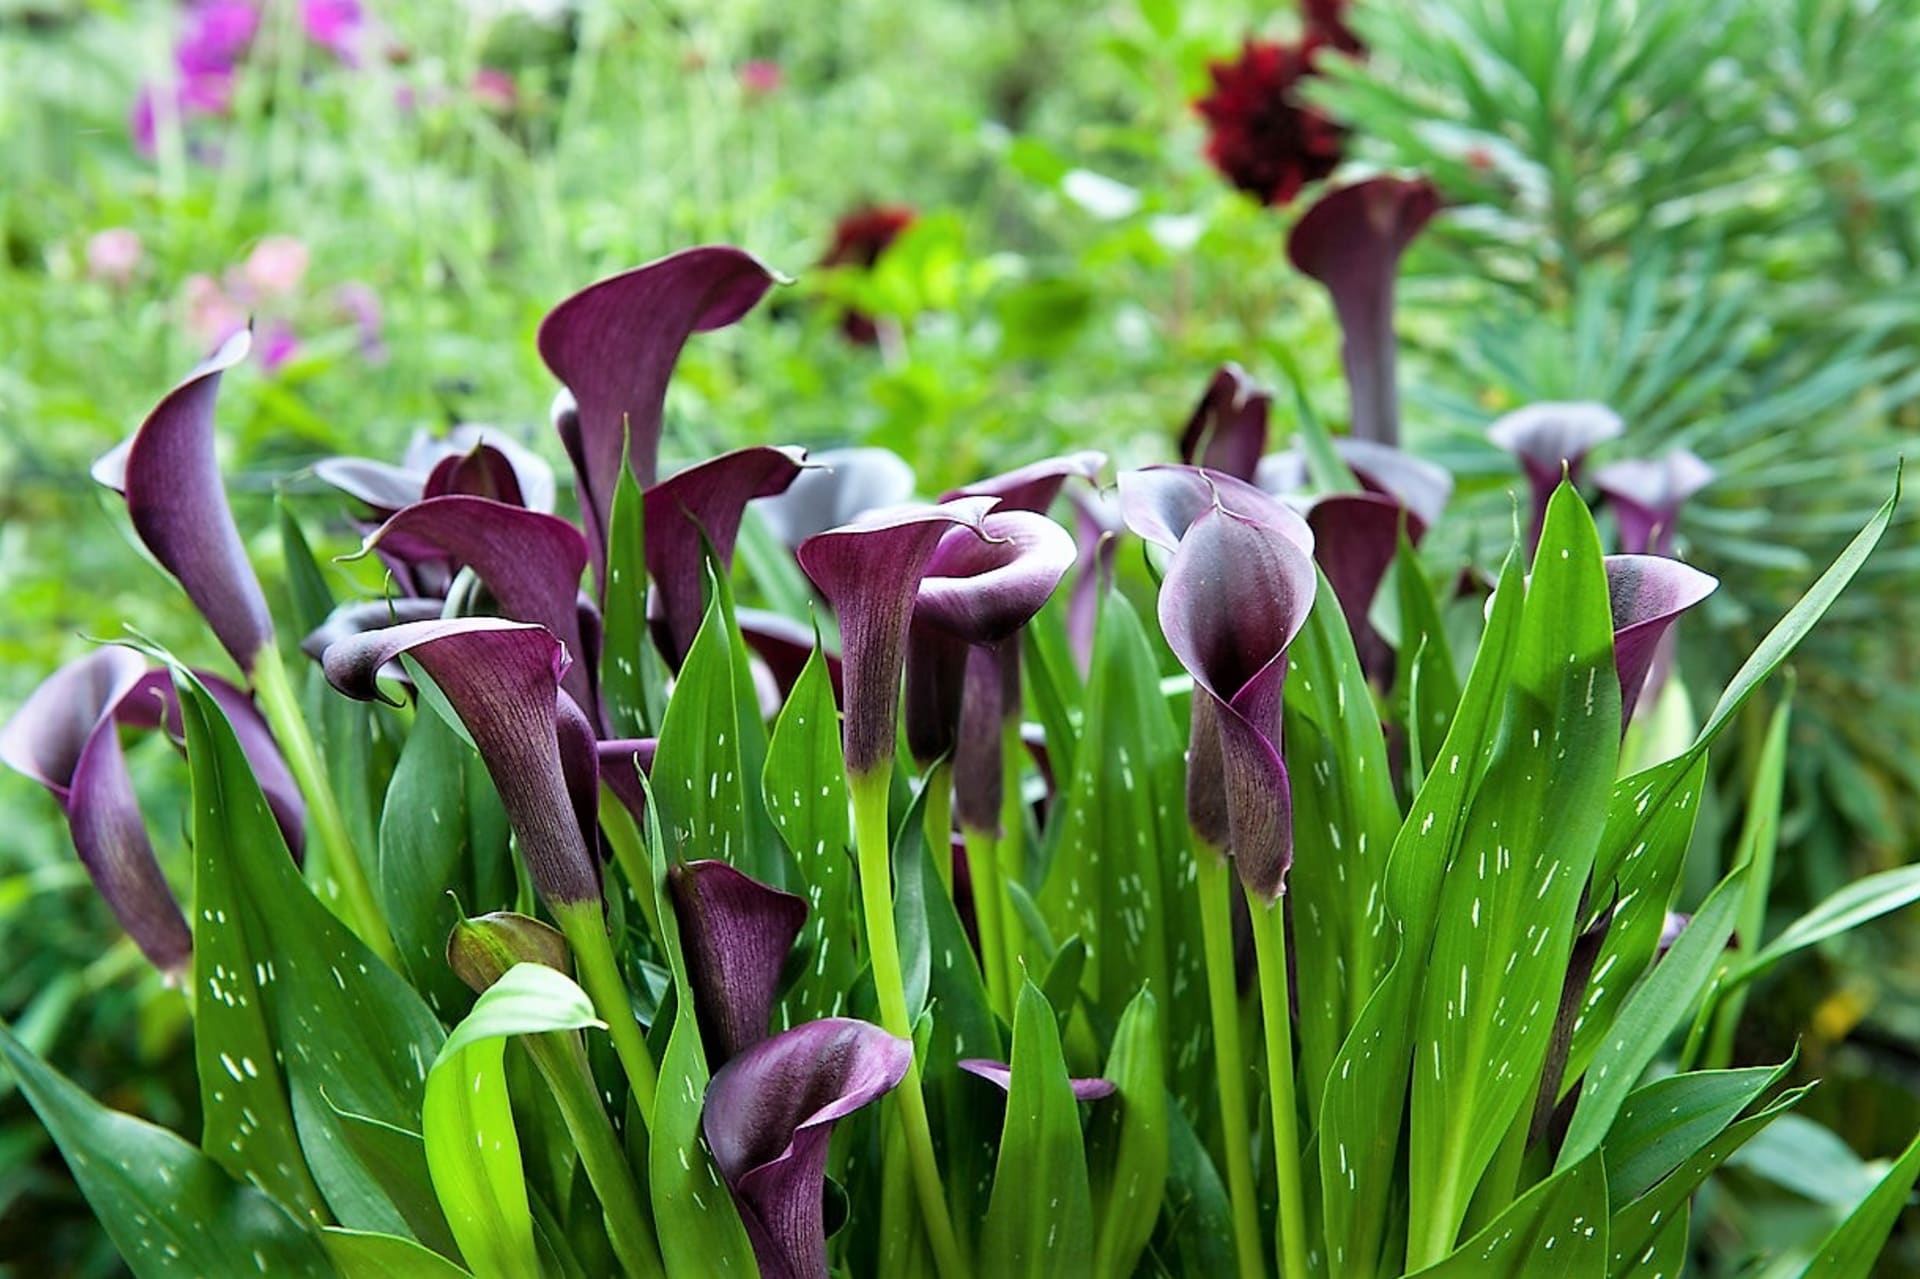 Šest nejkrásnějších letních cibulovin: Zahradní kaly (Zantedeschia) jsou květiny stylové, moderní a tak trochu rozmarné. Tyhle krásky s květy ve tvaru trychtýřovitých kalichů jsou v nejrůznějších barvách .